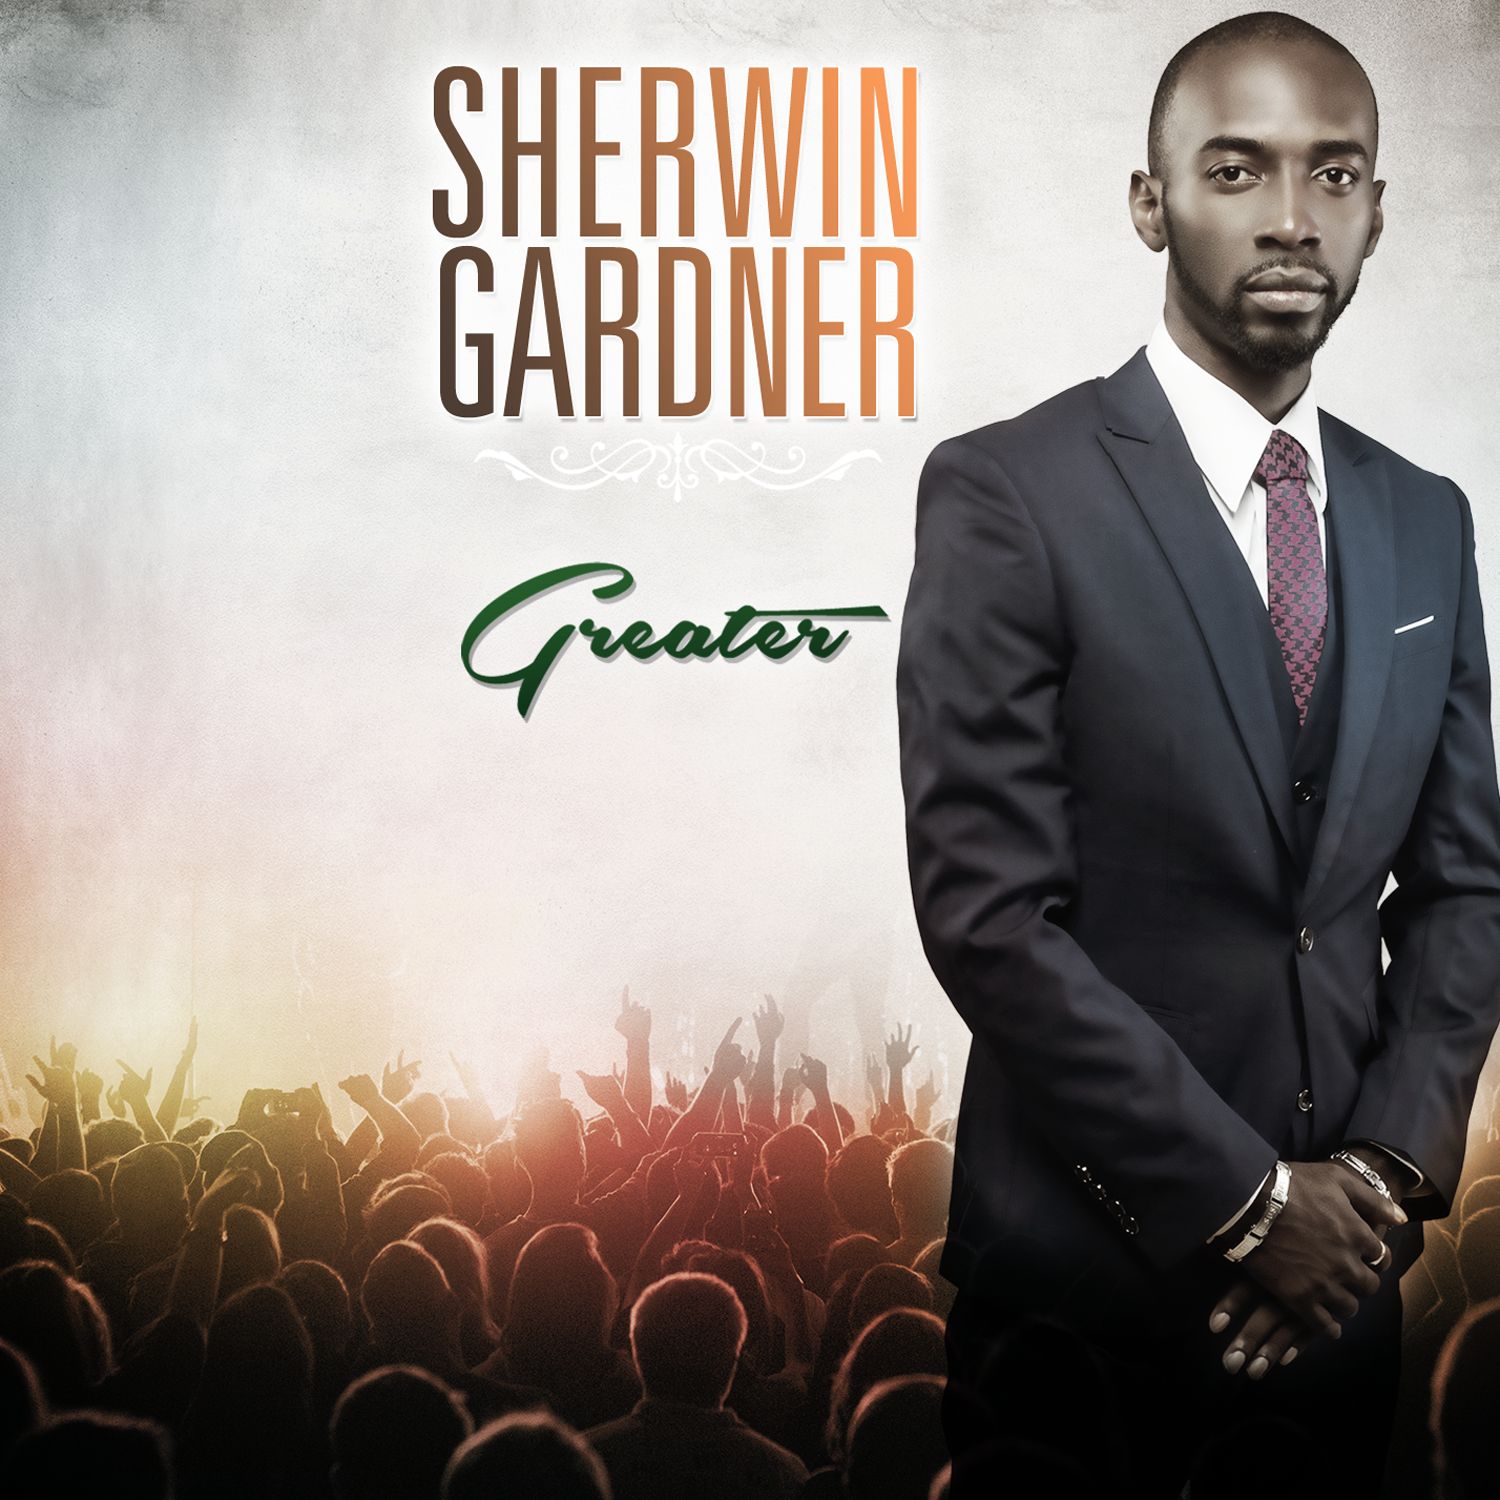 Sherwin Gardner - Greater (2017) [HDTracks FLAC 24bit/96kHz]